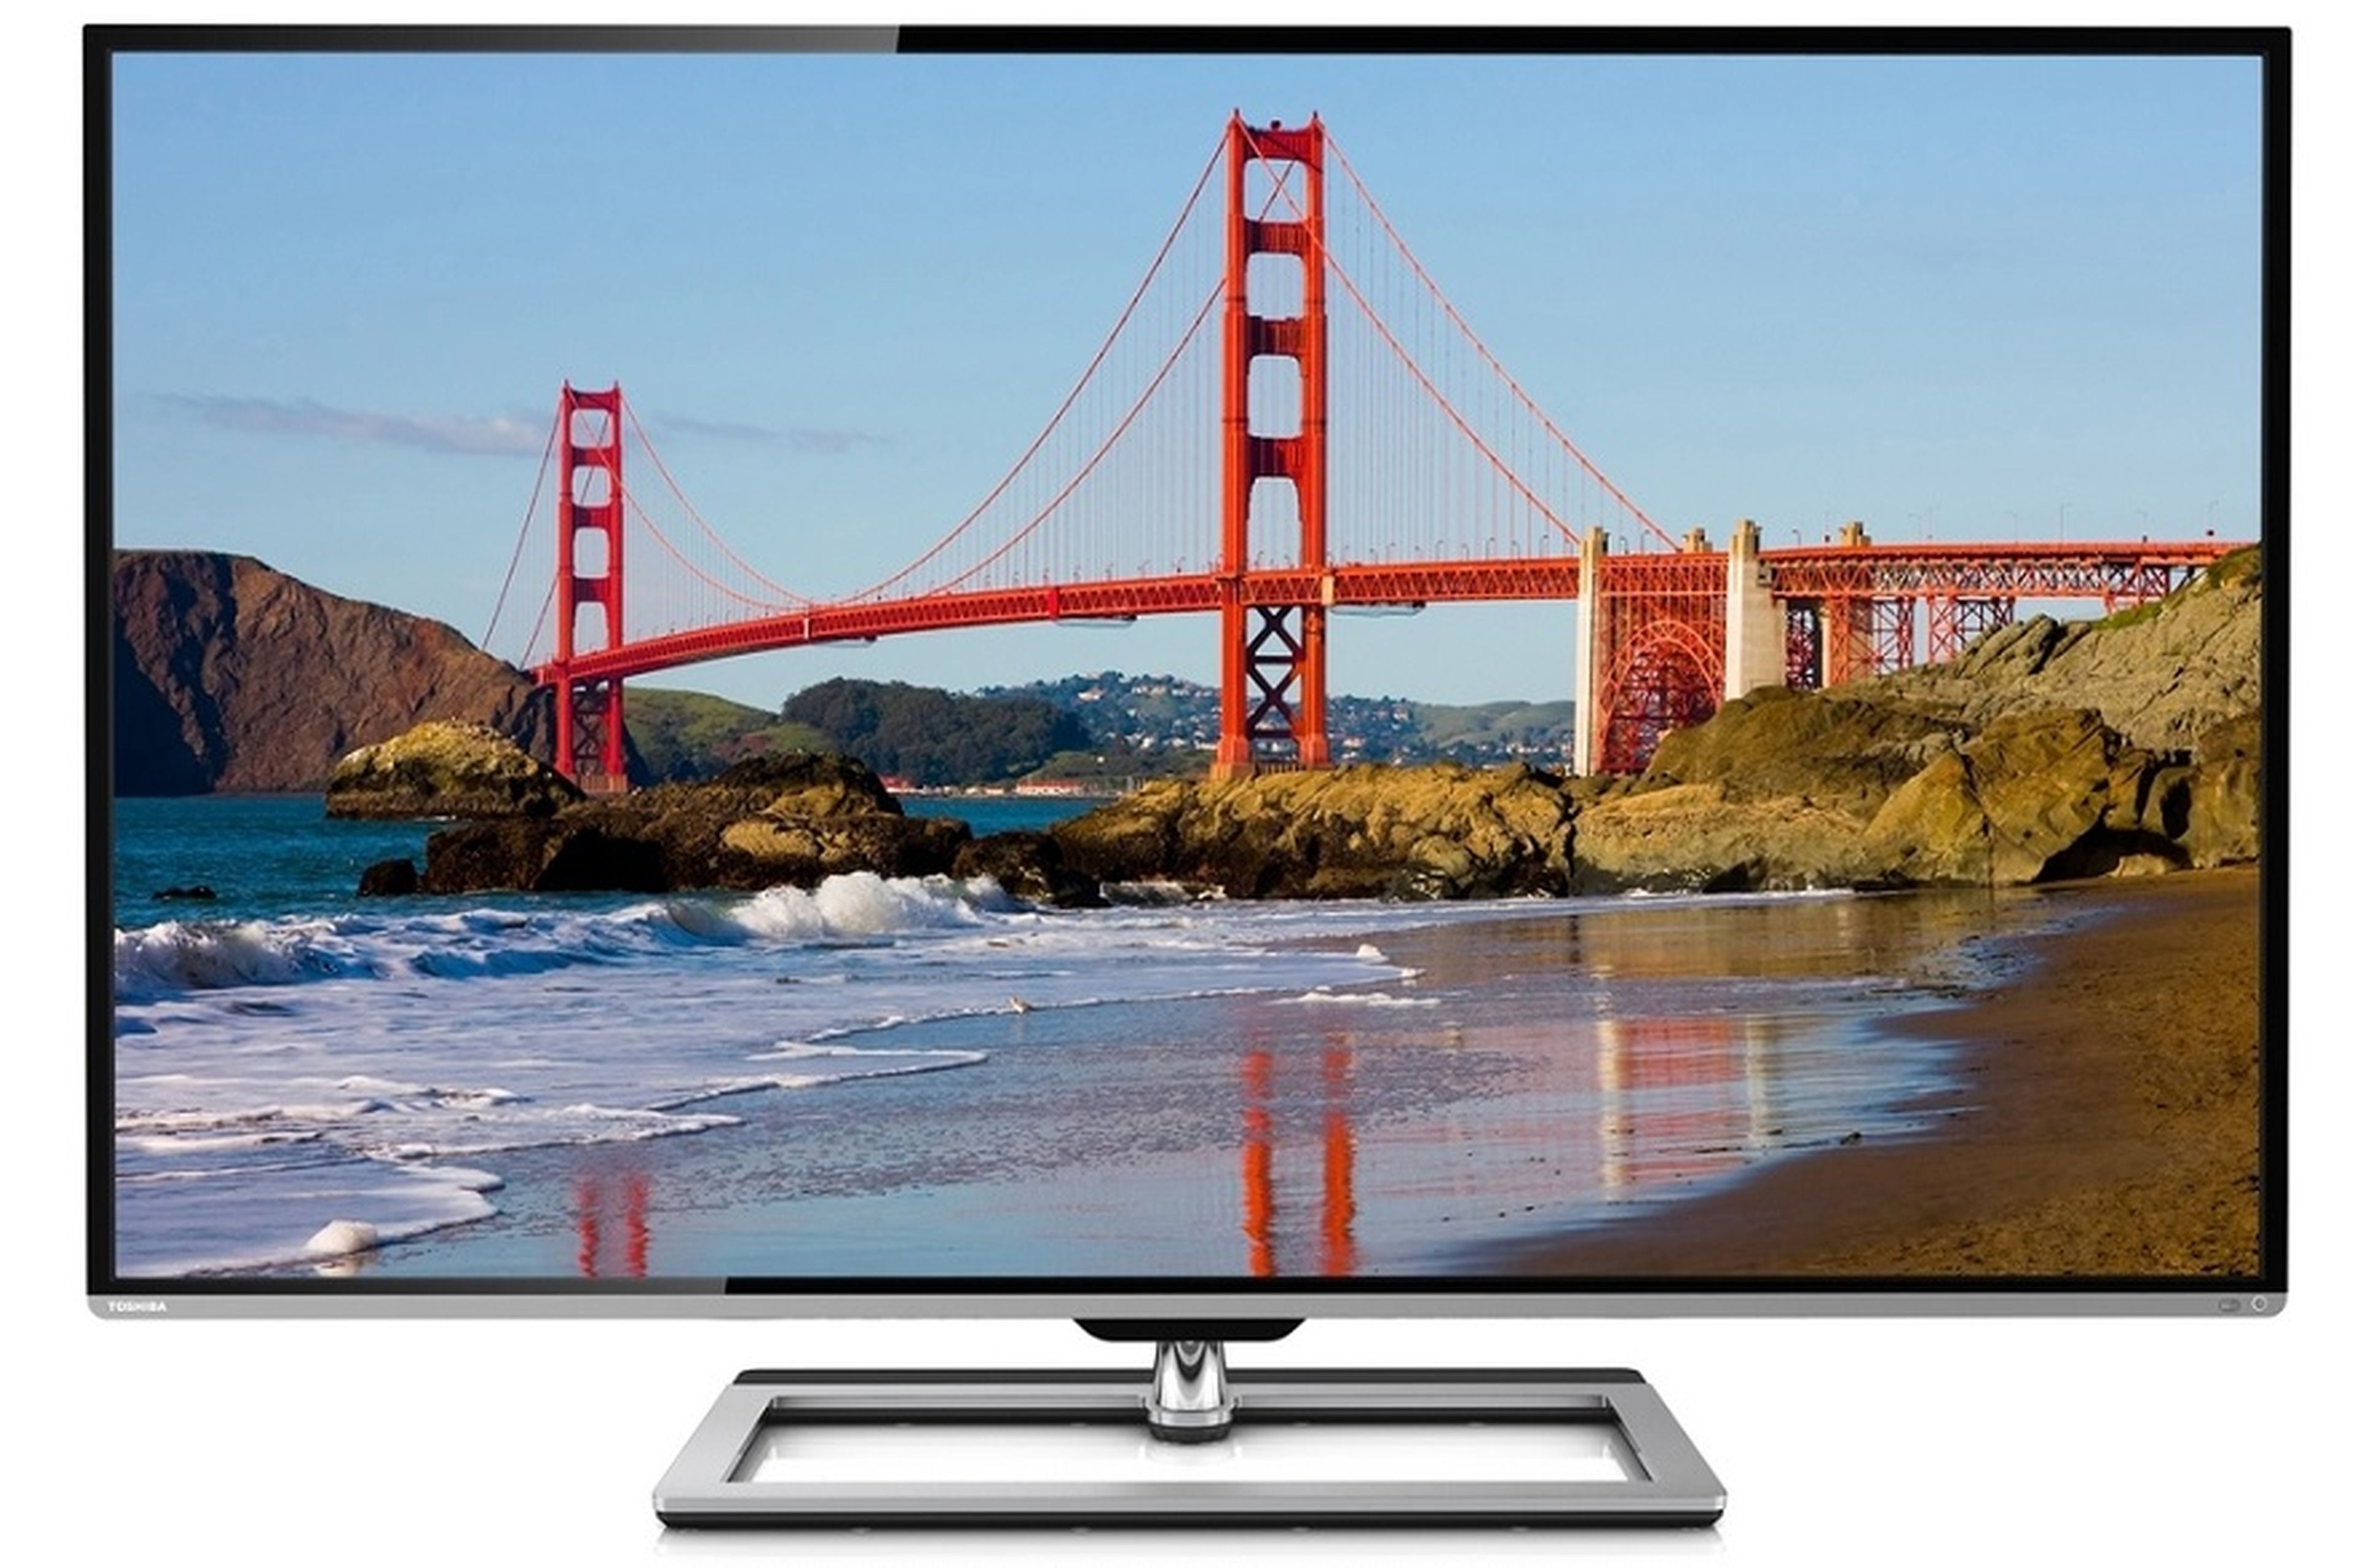 Toshiba presenta su serie L9, nueva gama de televisiones 4K